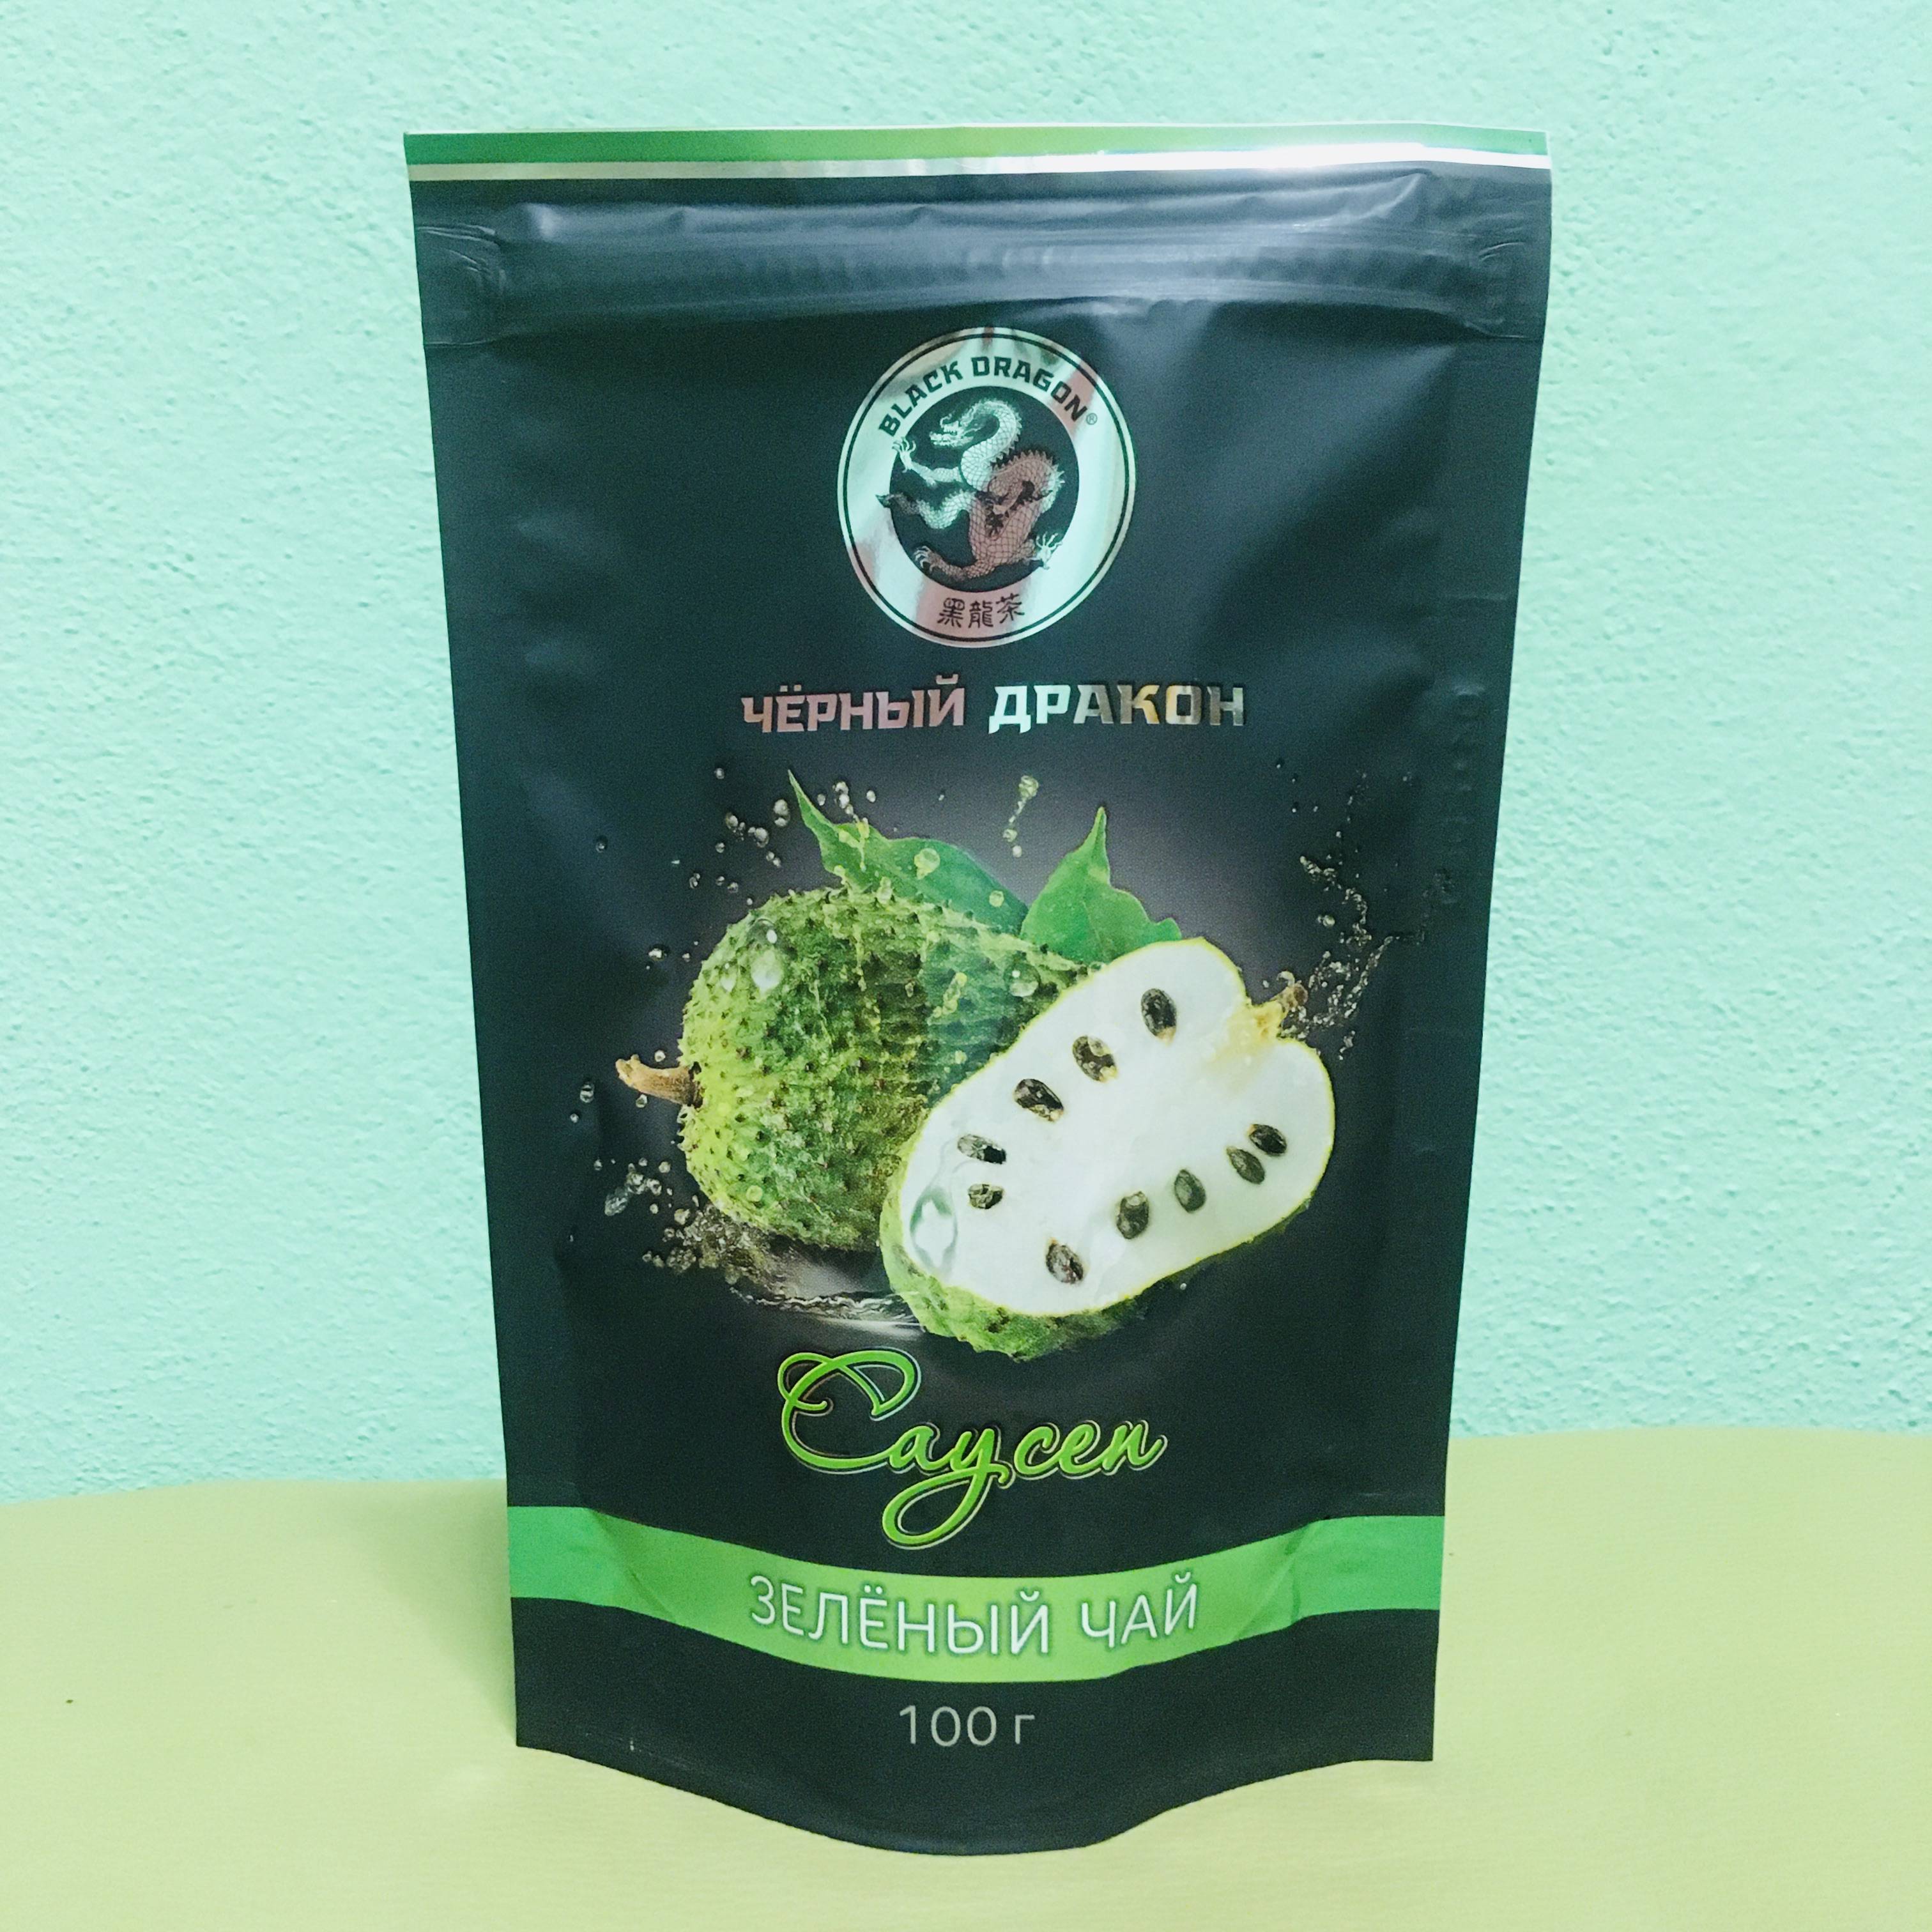 Зеленый чай с саусепом: описание вкуса, производитель, отзывы